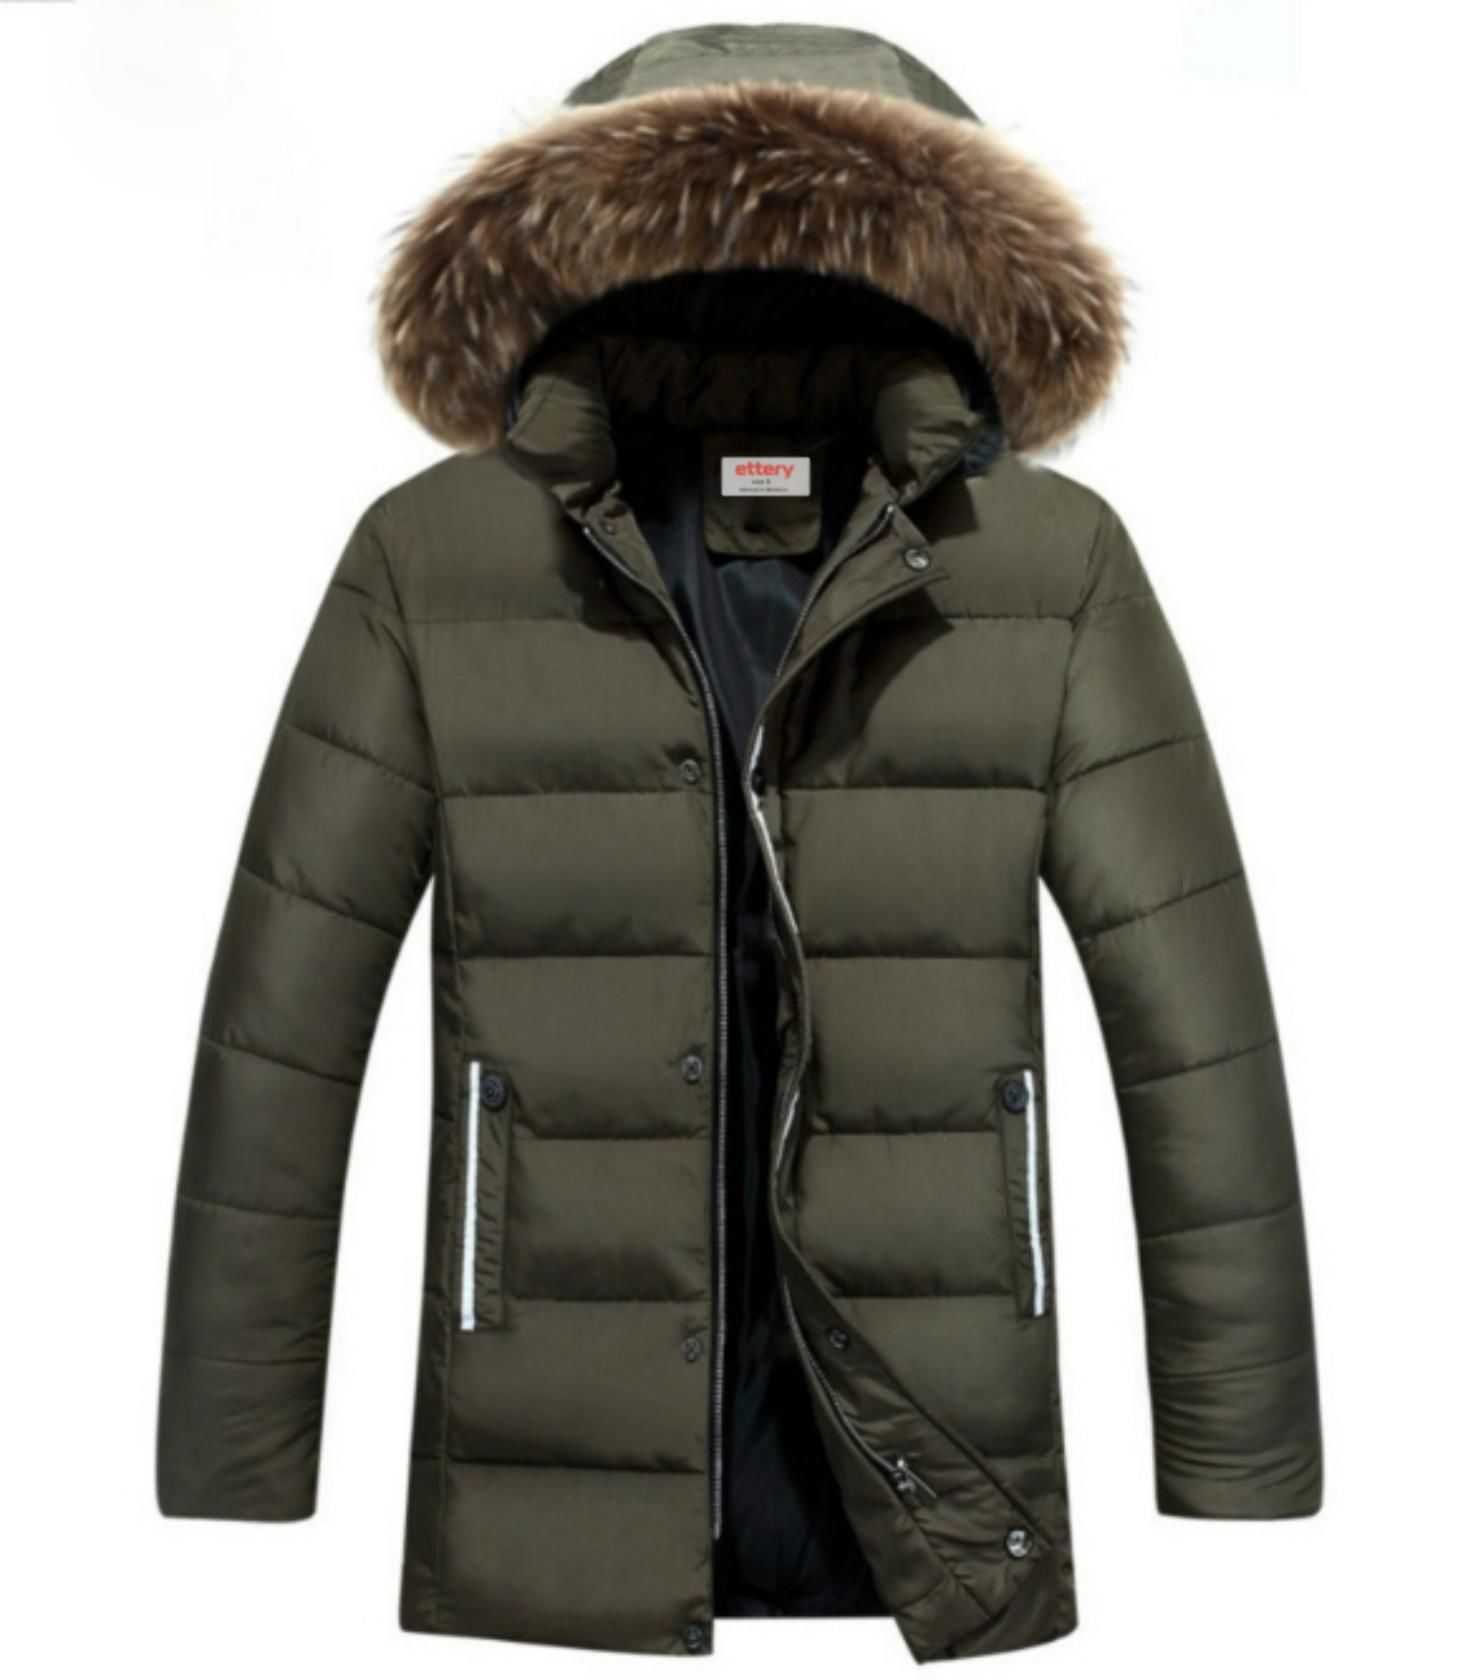 Men's Winter Jacket